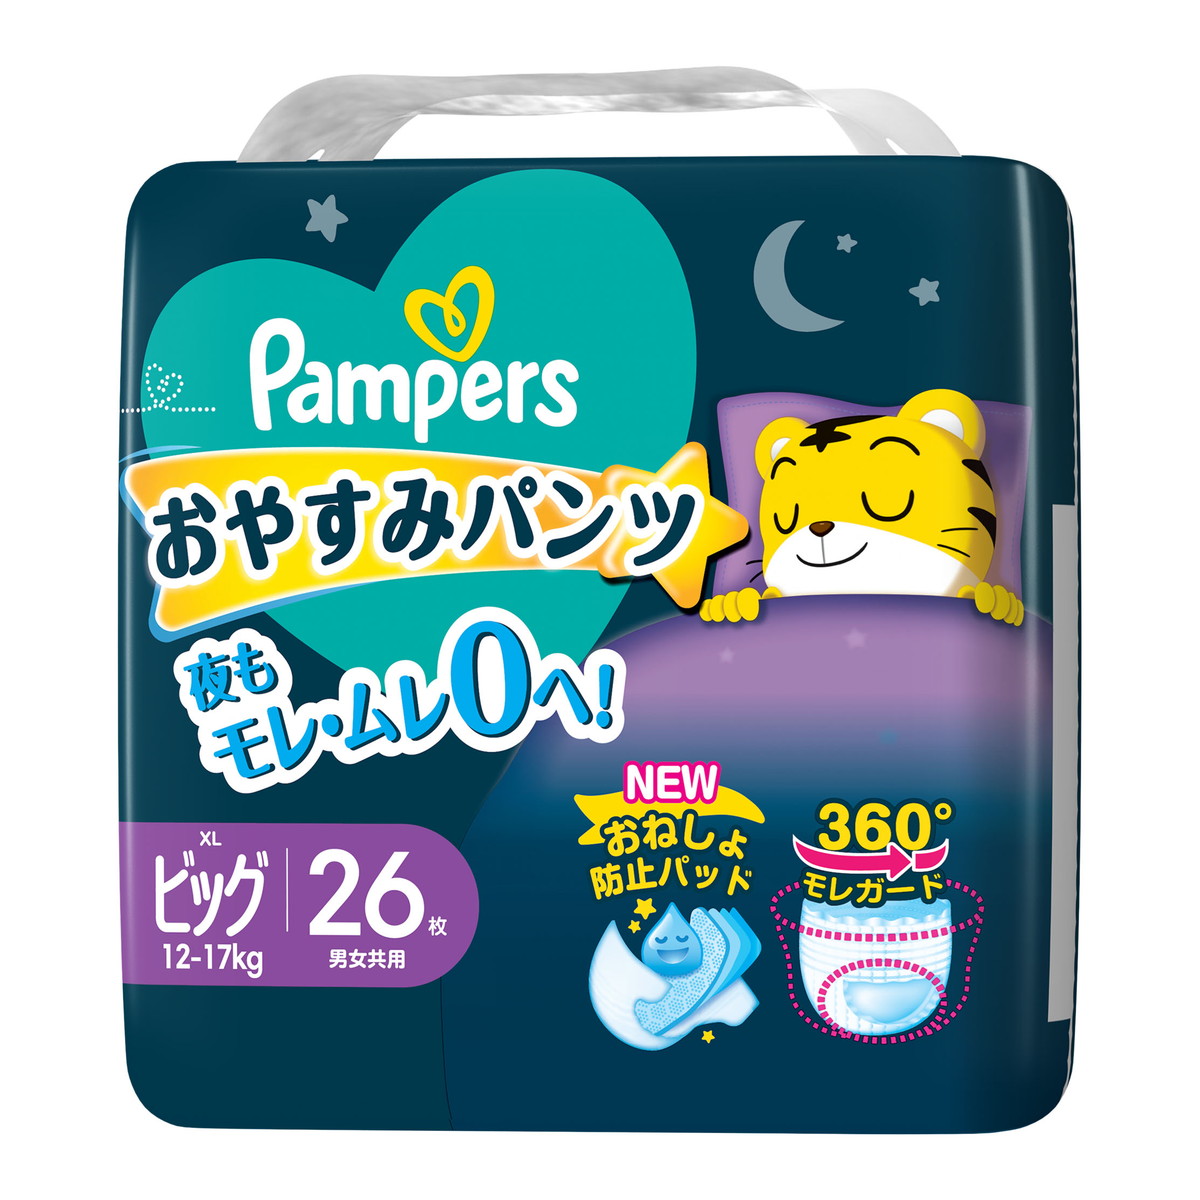 パンパース パンパース おやすみパンツ ビッグサイズ 26x1パック 夜用パンツ 紙おむつの商品画像